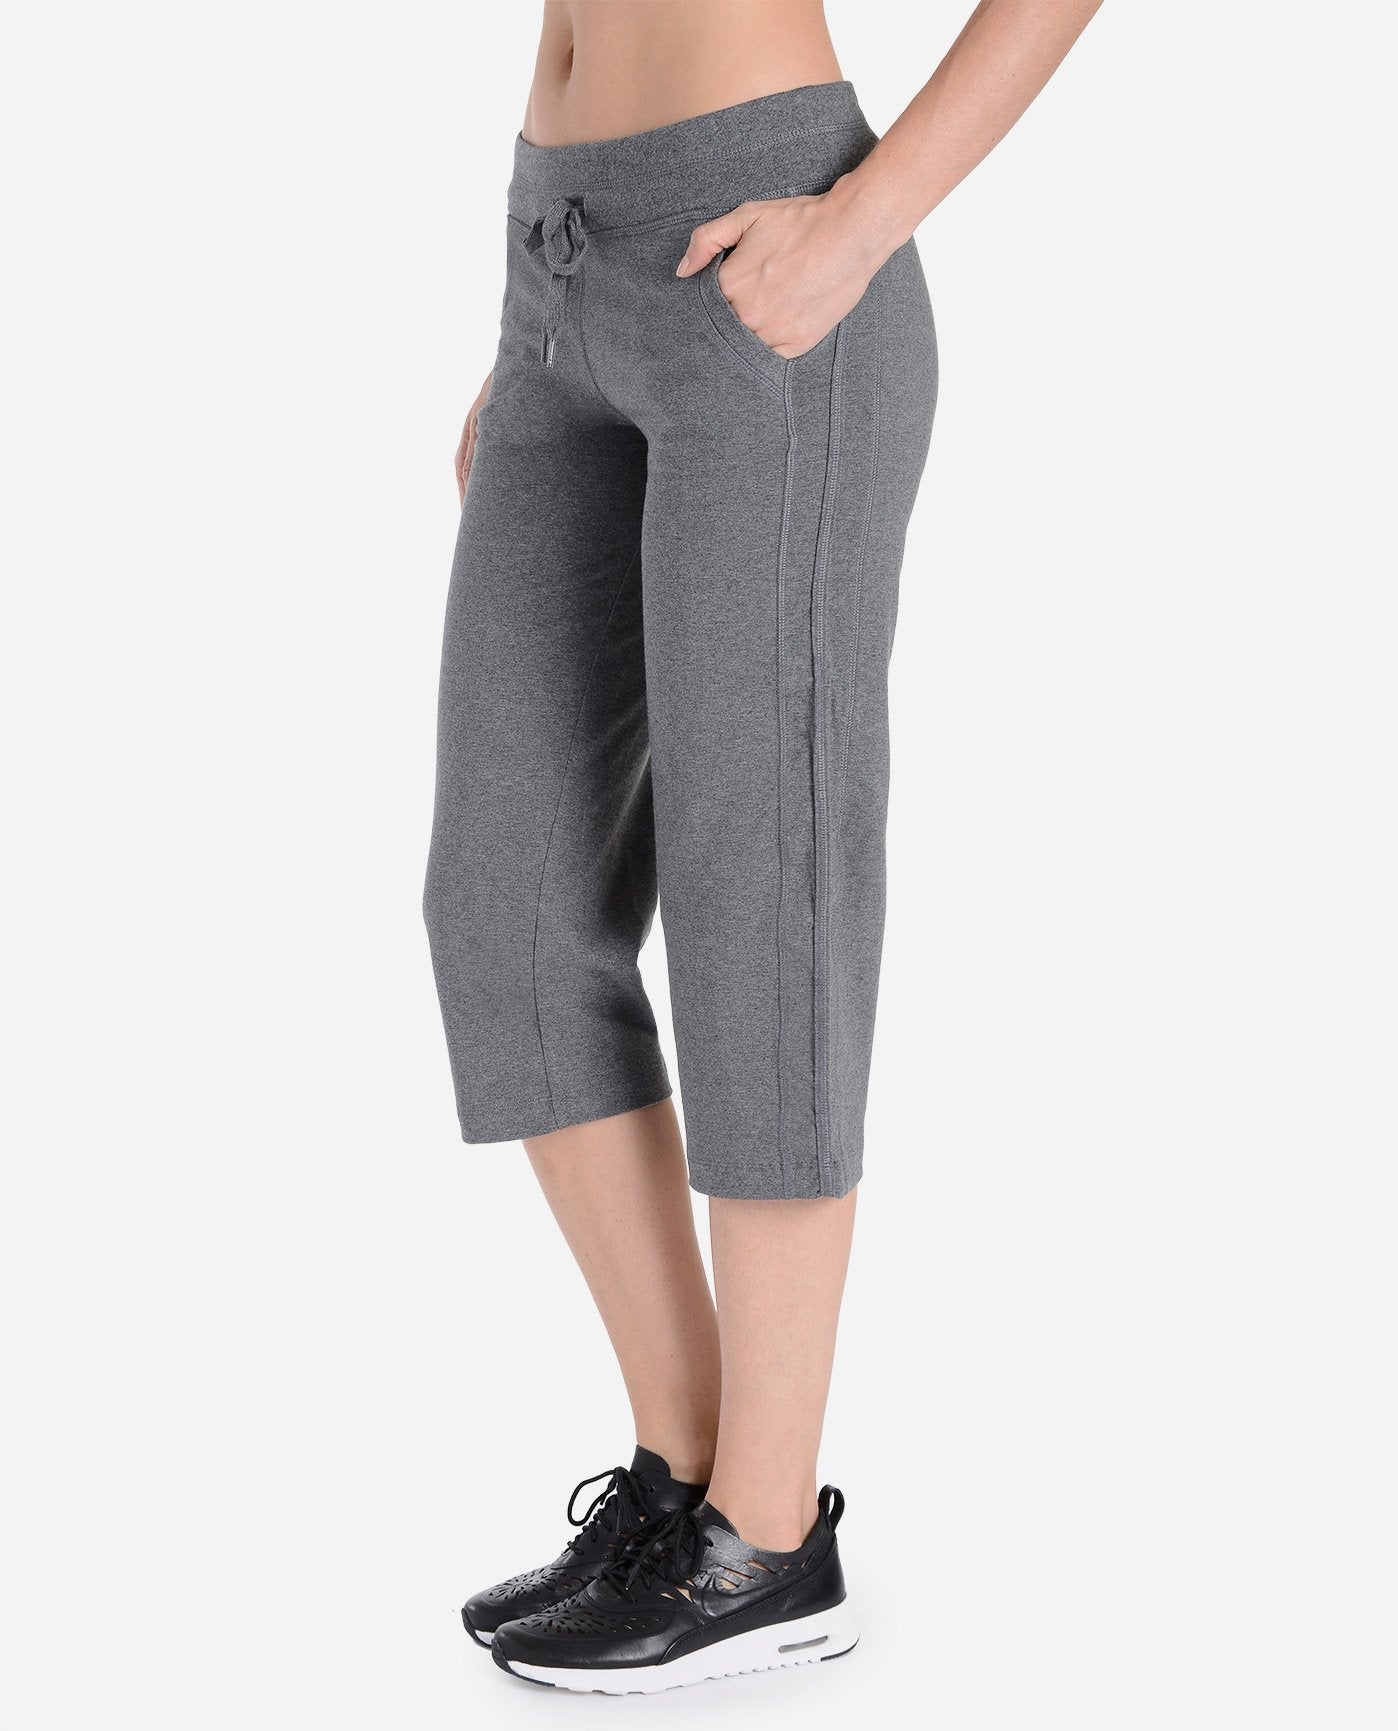 Danskin Now Womens Elastic Waist Casual Gray Windbreaker Pants Size XL  14-16